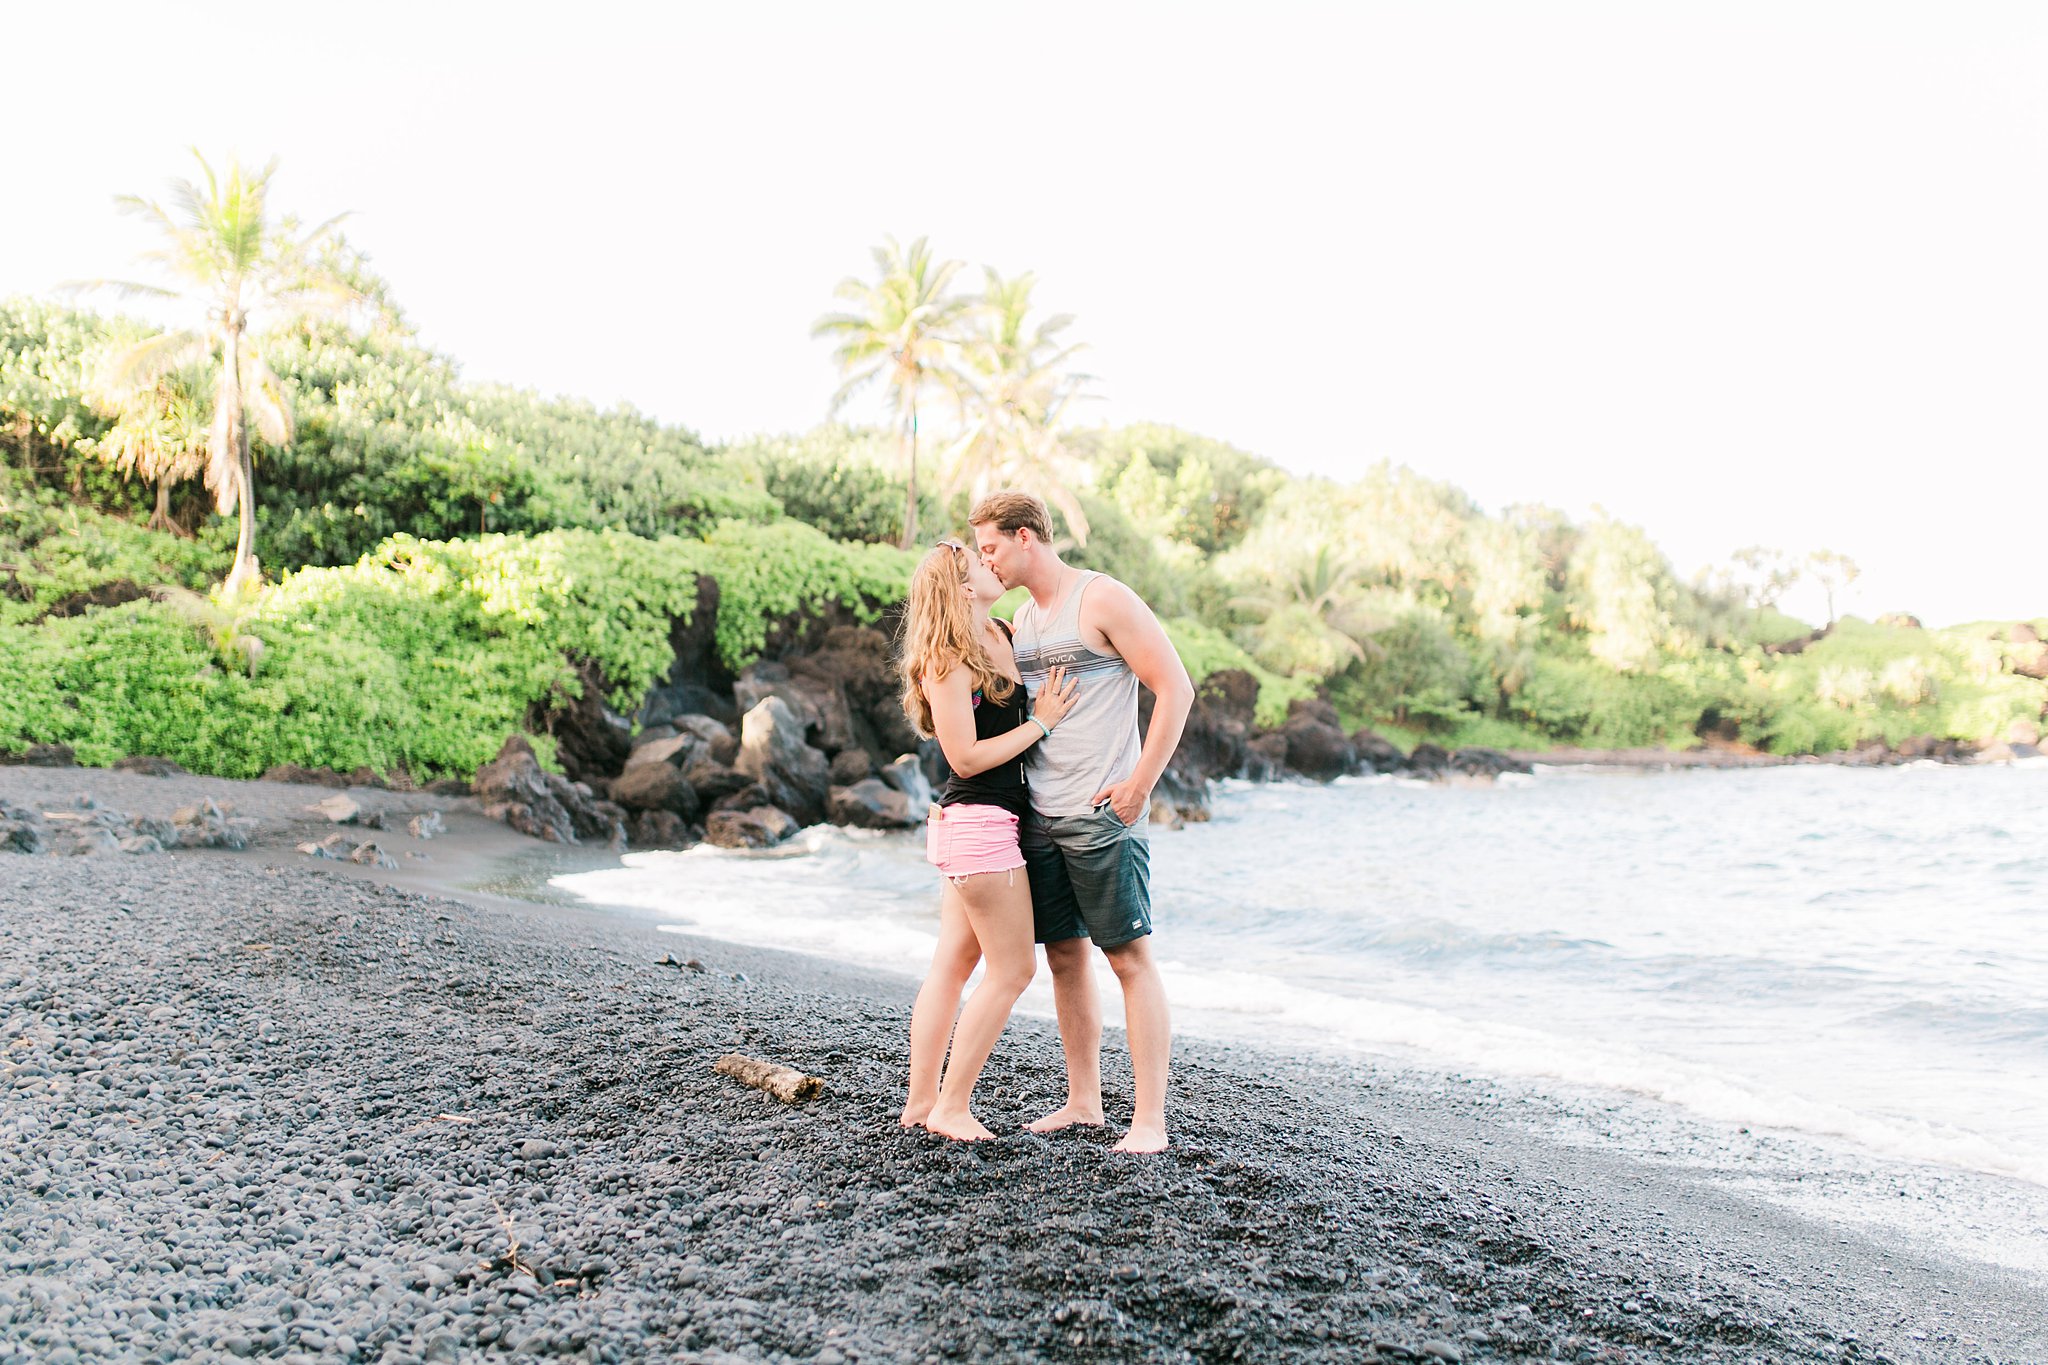 Justin & Megan Hawaiian Honeymoon Maui Oahu Vacation Photos-.jpg